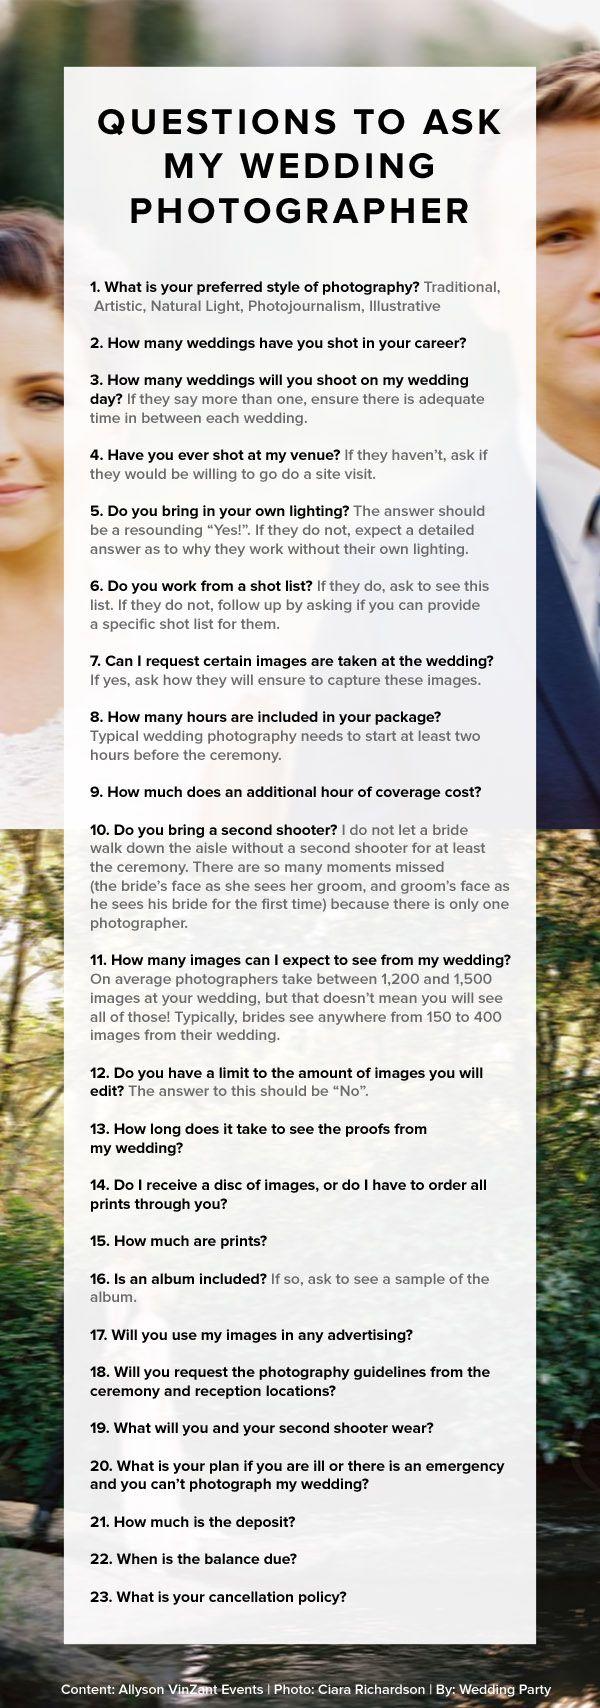 Свадьба - Какие Вопросы Задать Мой Свадебный Фотограф, Эллисон VinZant Событий